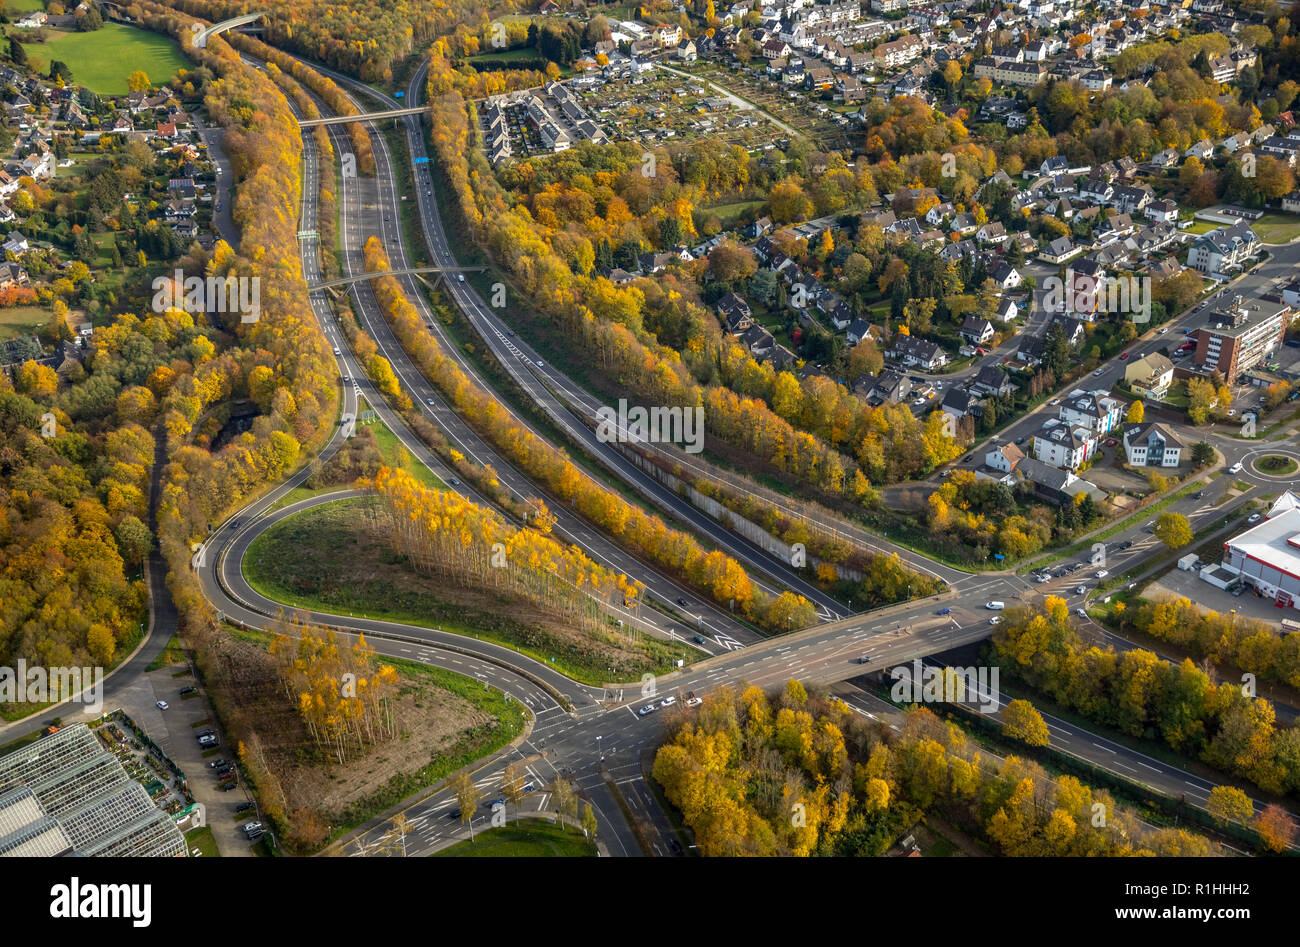 Vue aérienne, l'autoroute Werdener Straße B224 de l'autoroute a44, les feuilles d'automne, arbres, bande médiane avec arbres, pont de l'autoroute, petite circumsta Banque D'Images